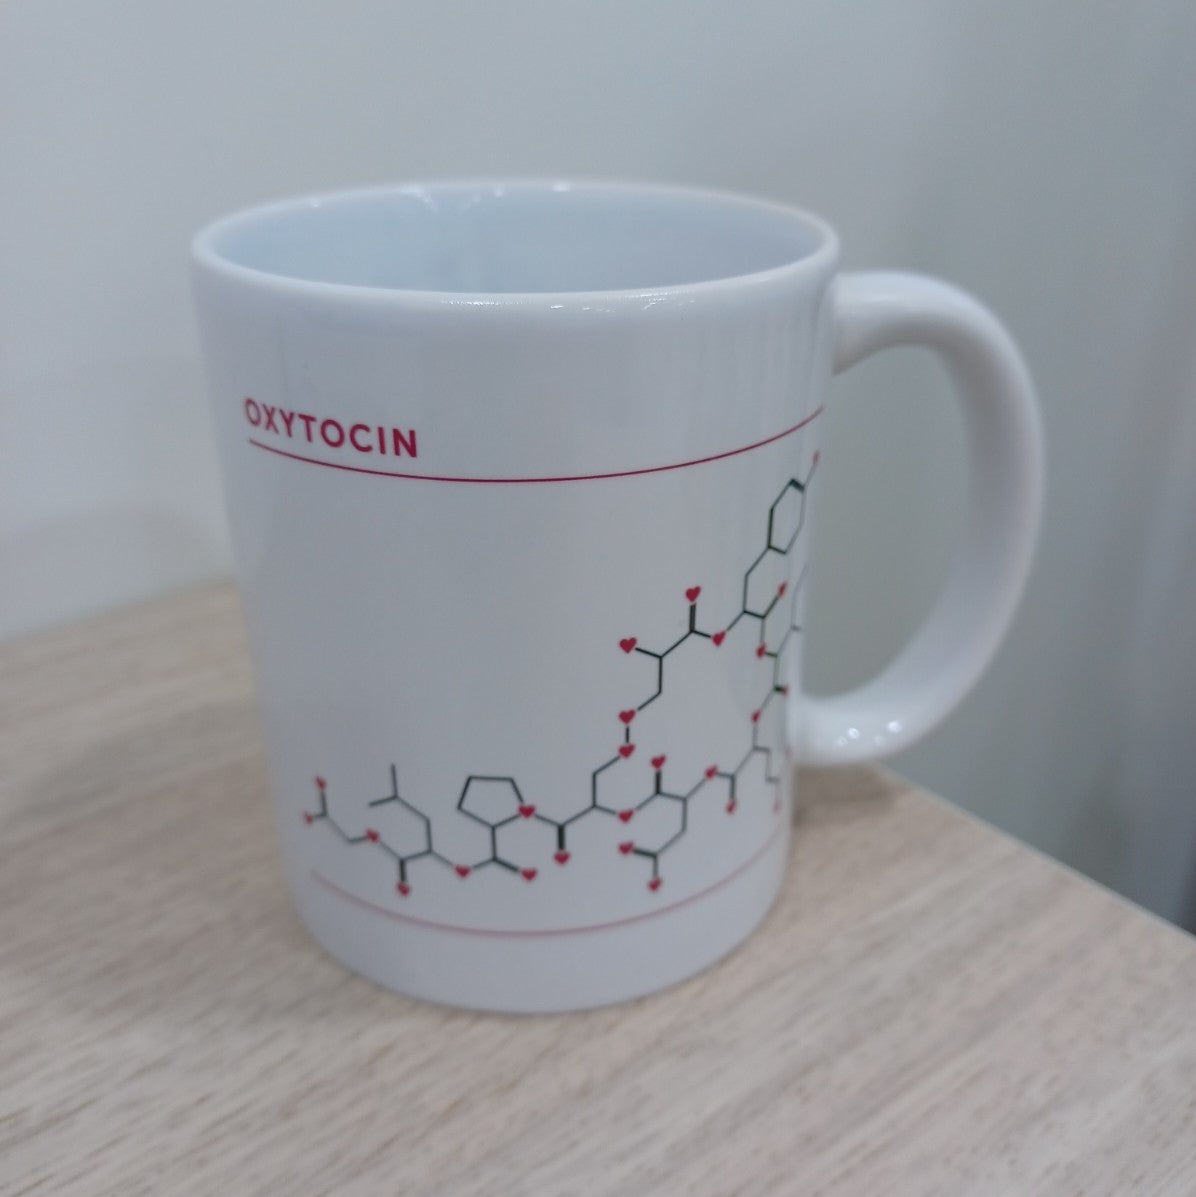 Oxytocin Mug